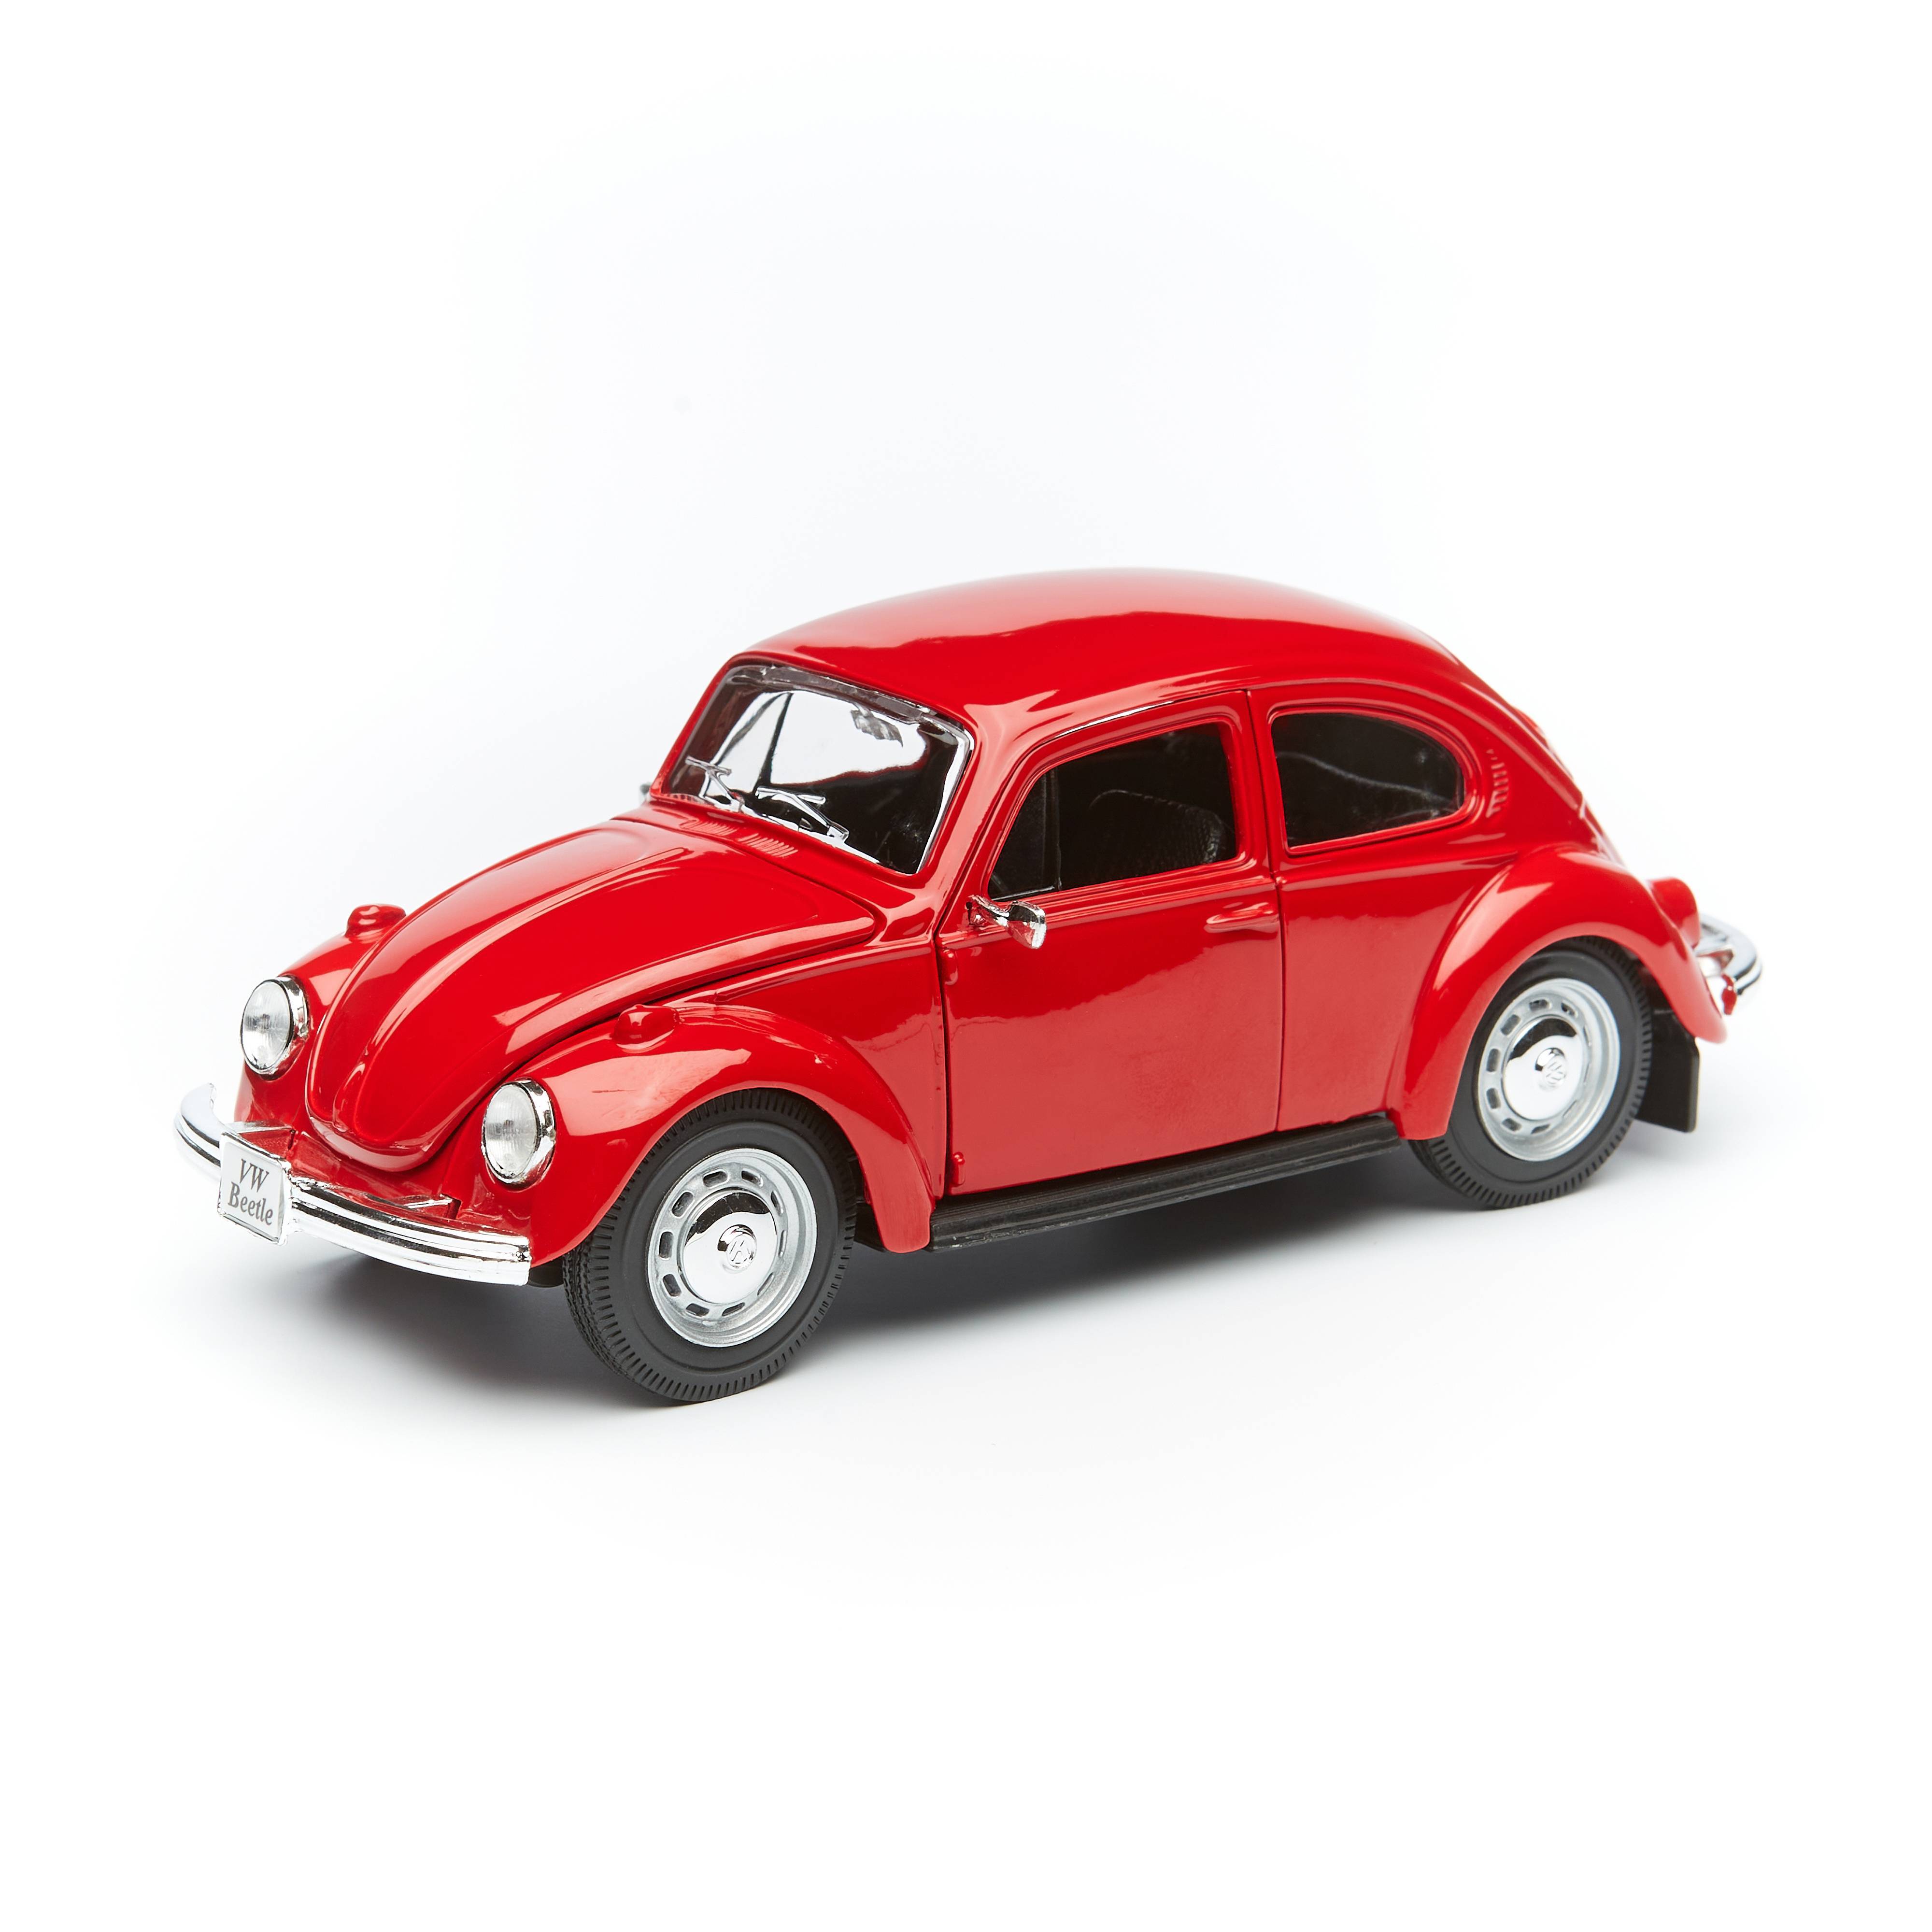 Maisto Машинка Volkswagen Beetle, 1:24 красная 31926